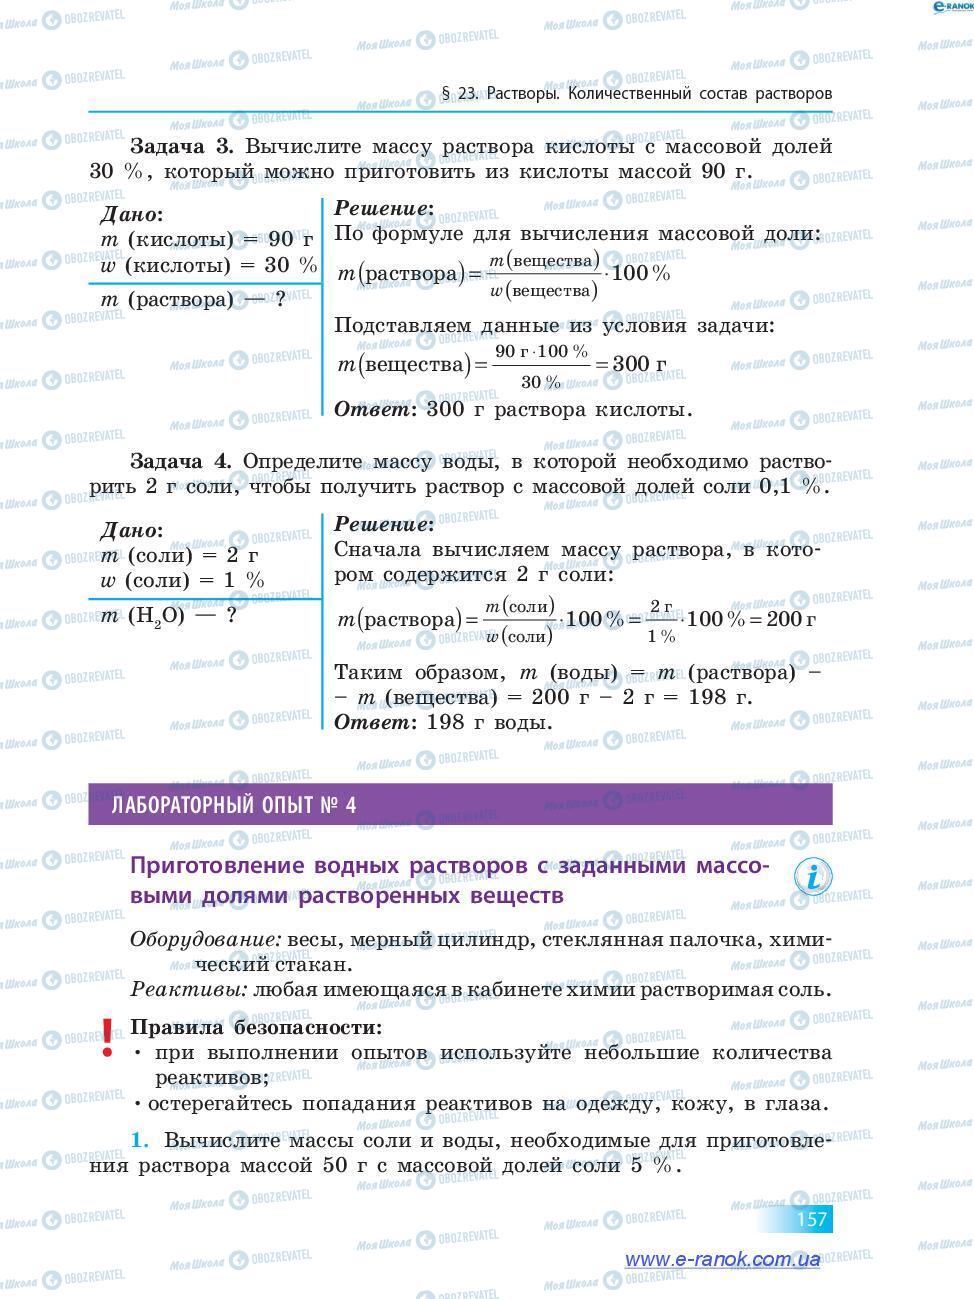 Підручники Хімія 7 клас сторінка 157